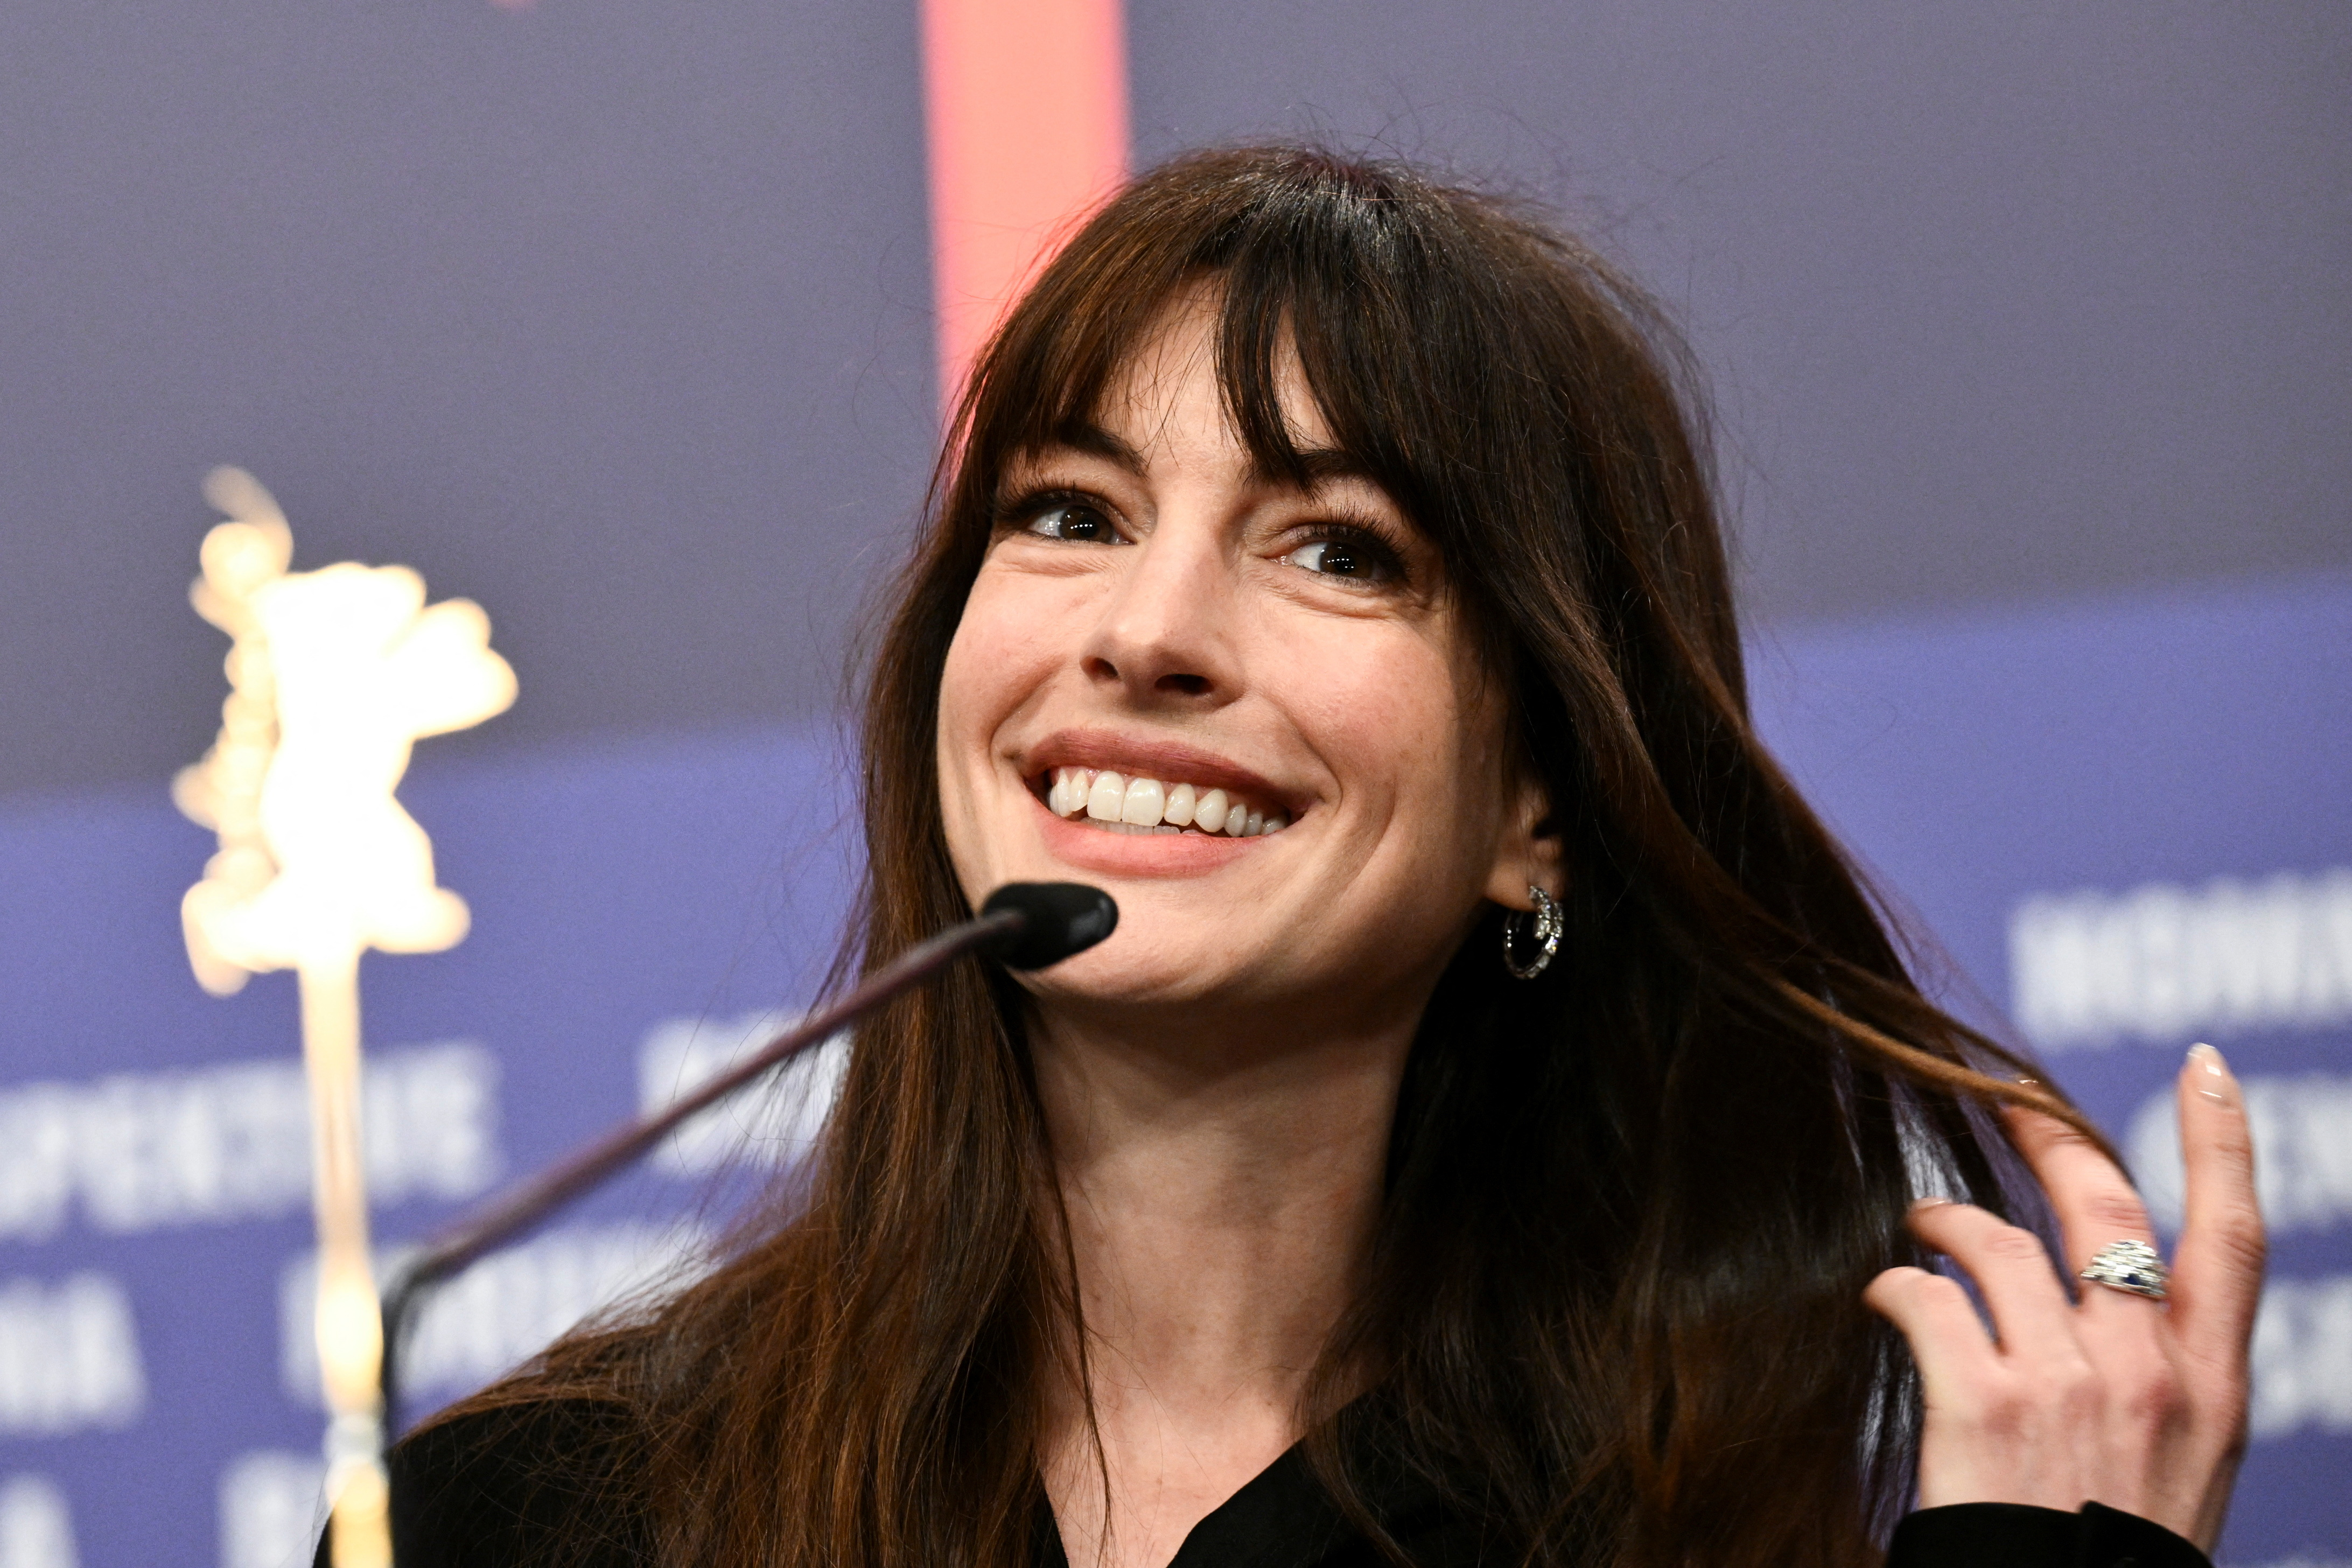 Anne Hathaway se uniría al cast de Spider-Man 4 en el papel de Felicia Hardy, quien en comics y series animadas ha tenido el manto de La Gata Negra
 REUTERS/Annegret Hilse